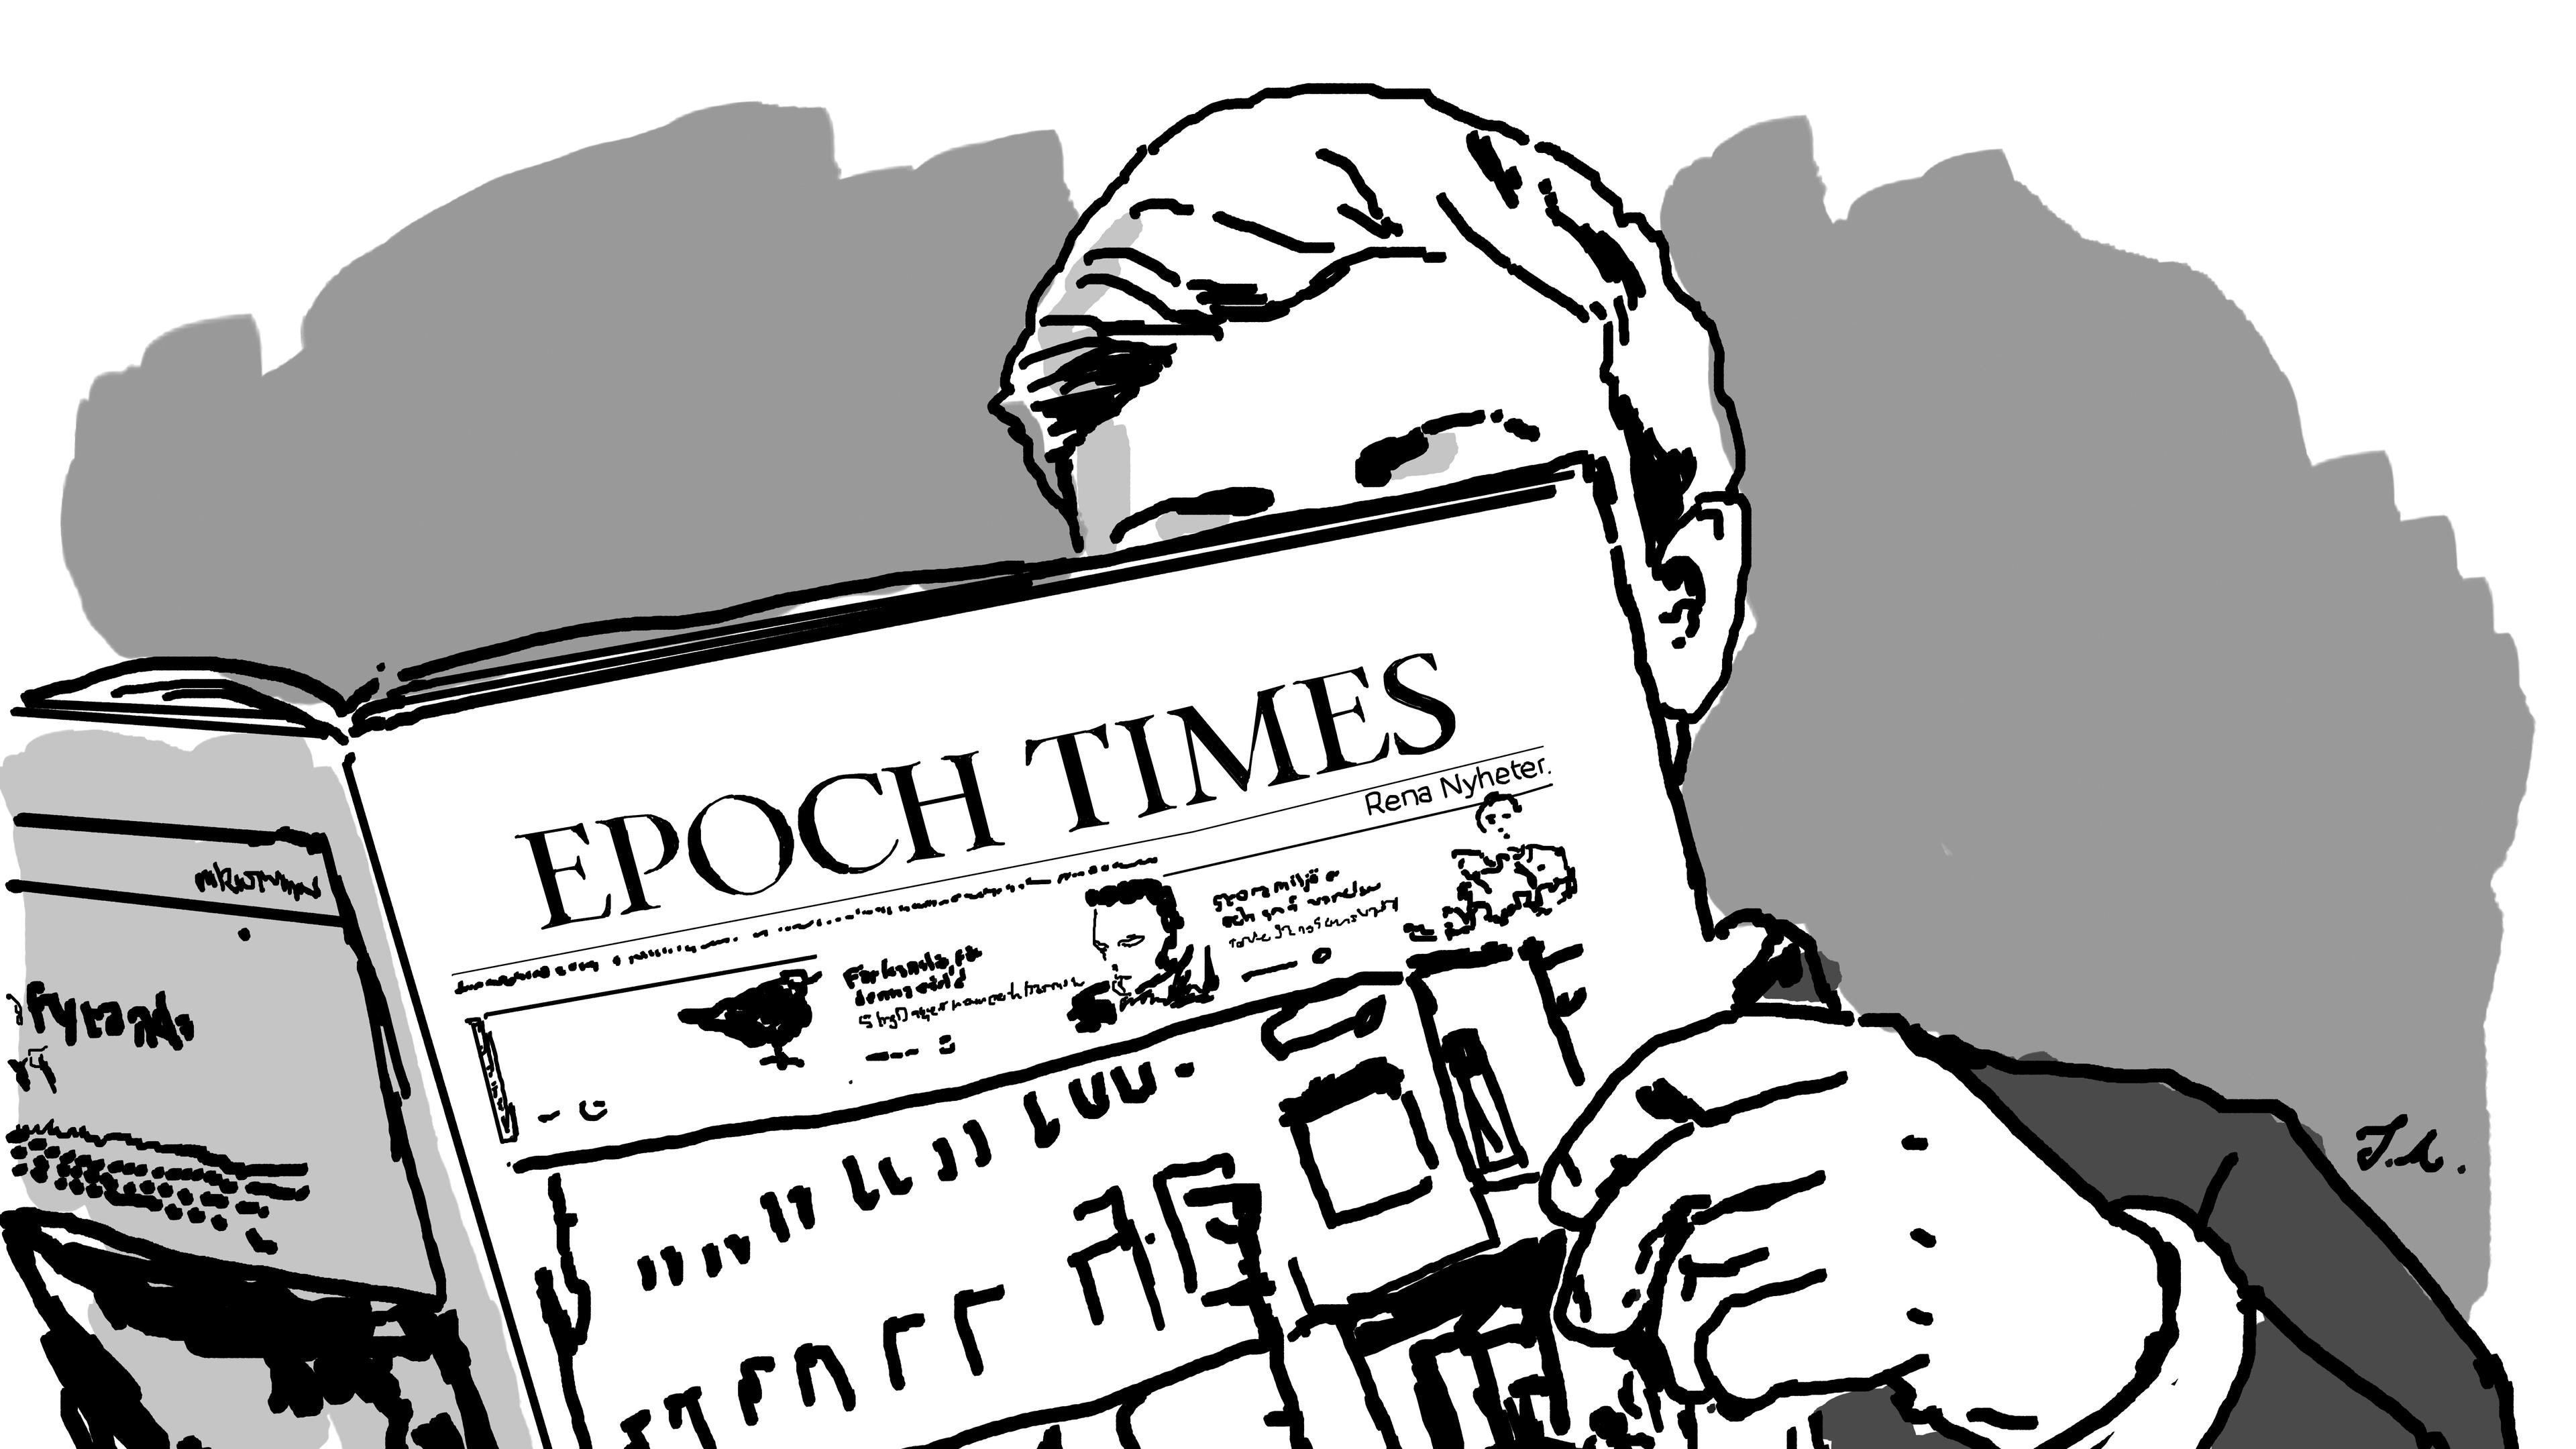 Flera lokaltidningar i Bonniersfären har publicerat en ledarartikel av Lisa Bjurwald som kräver att Epoch Times utesluts ur Tidningsutgivarna (TU). Foto: Jens Almroth